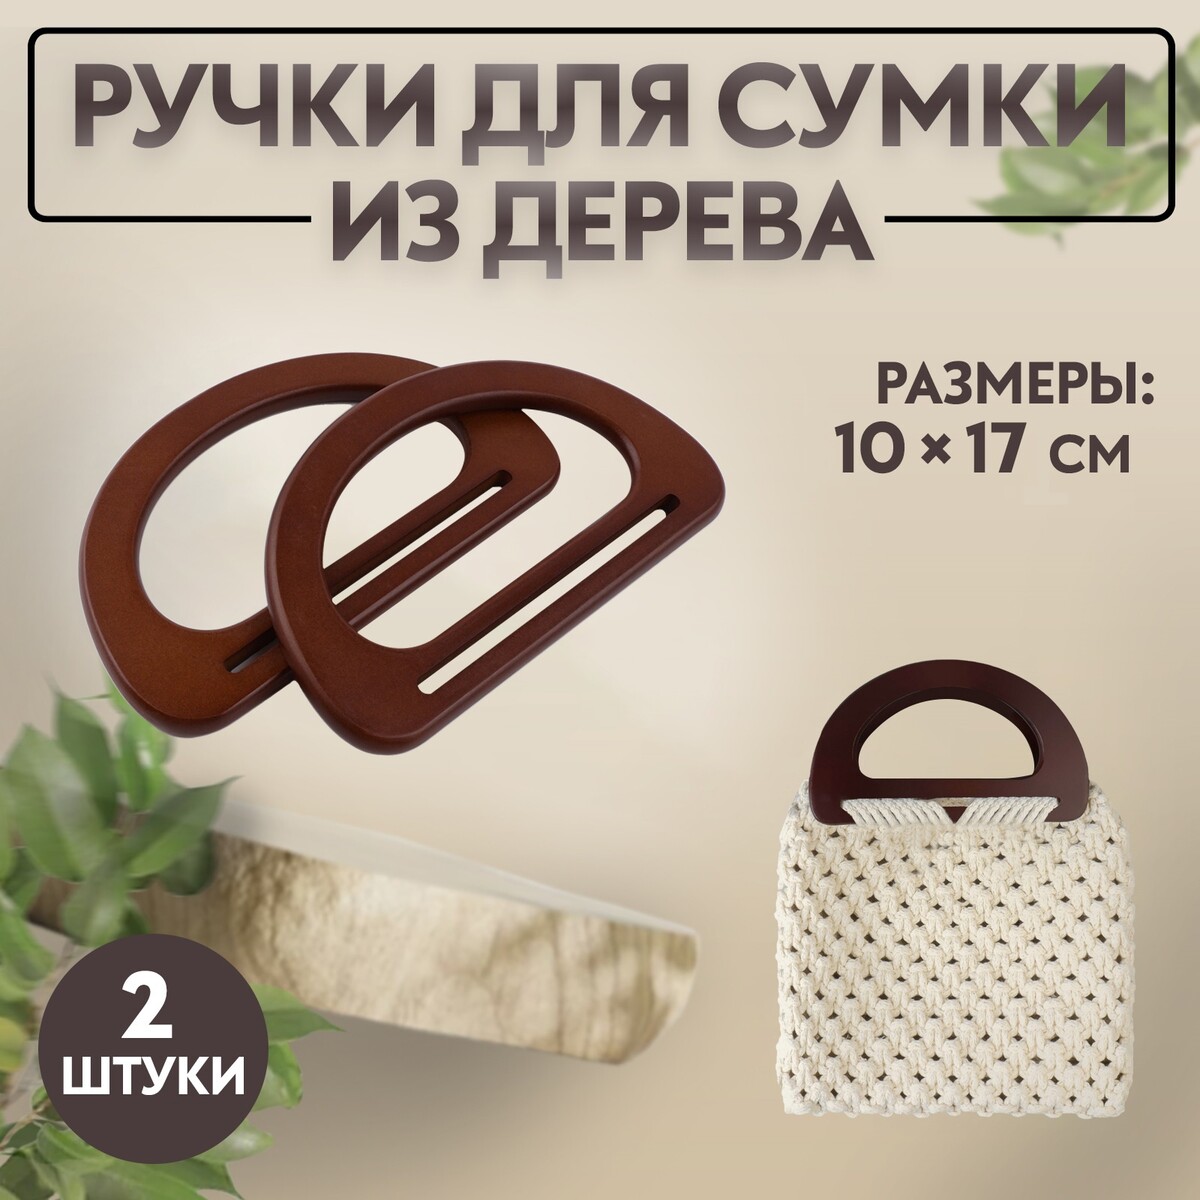 Ручки для сумки деревянные, 10 × 17 см, 2 шт, цвет темно-коричневый ручки для сумки деревянные плетеные d 10 2 12 5 см 2 шт коричневый